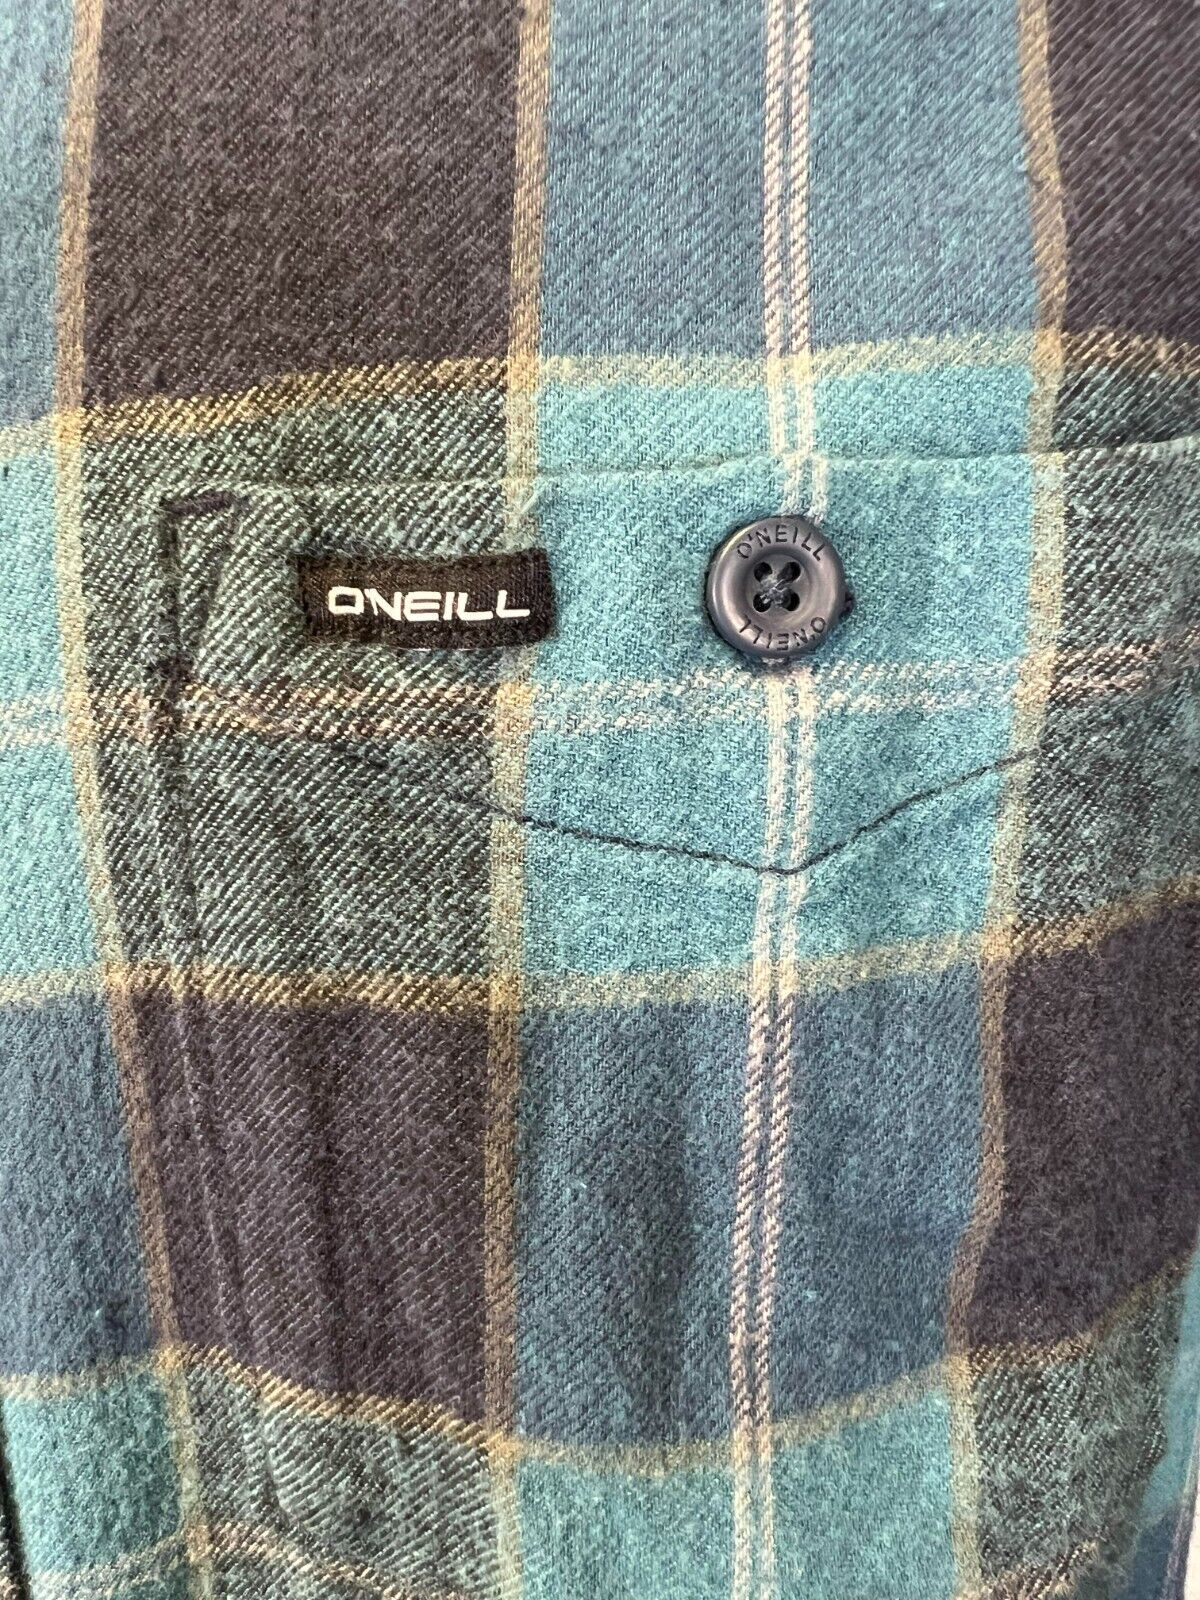 O'Neill Men's Navy Blue Shirt Redmond Plaid Stretch Flannel Long Sleeve (S24)